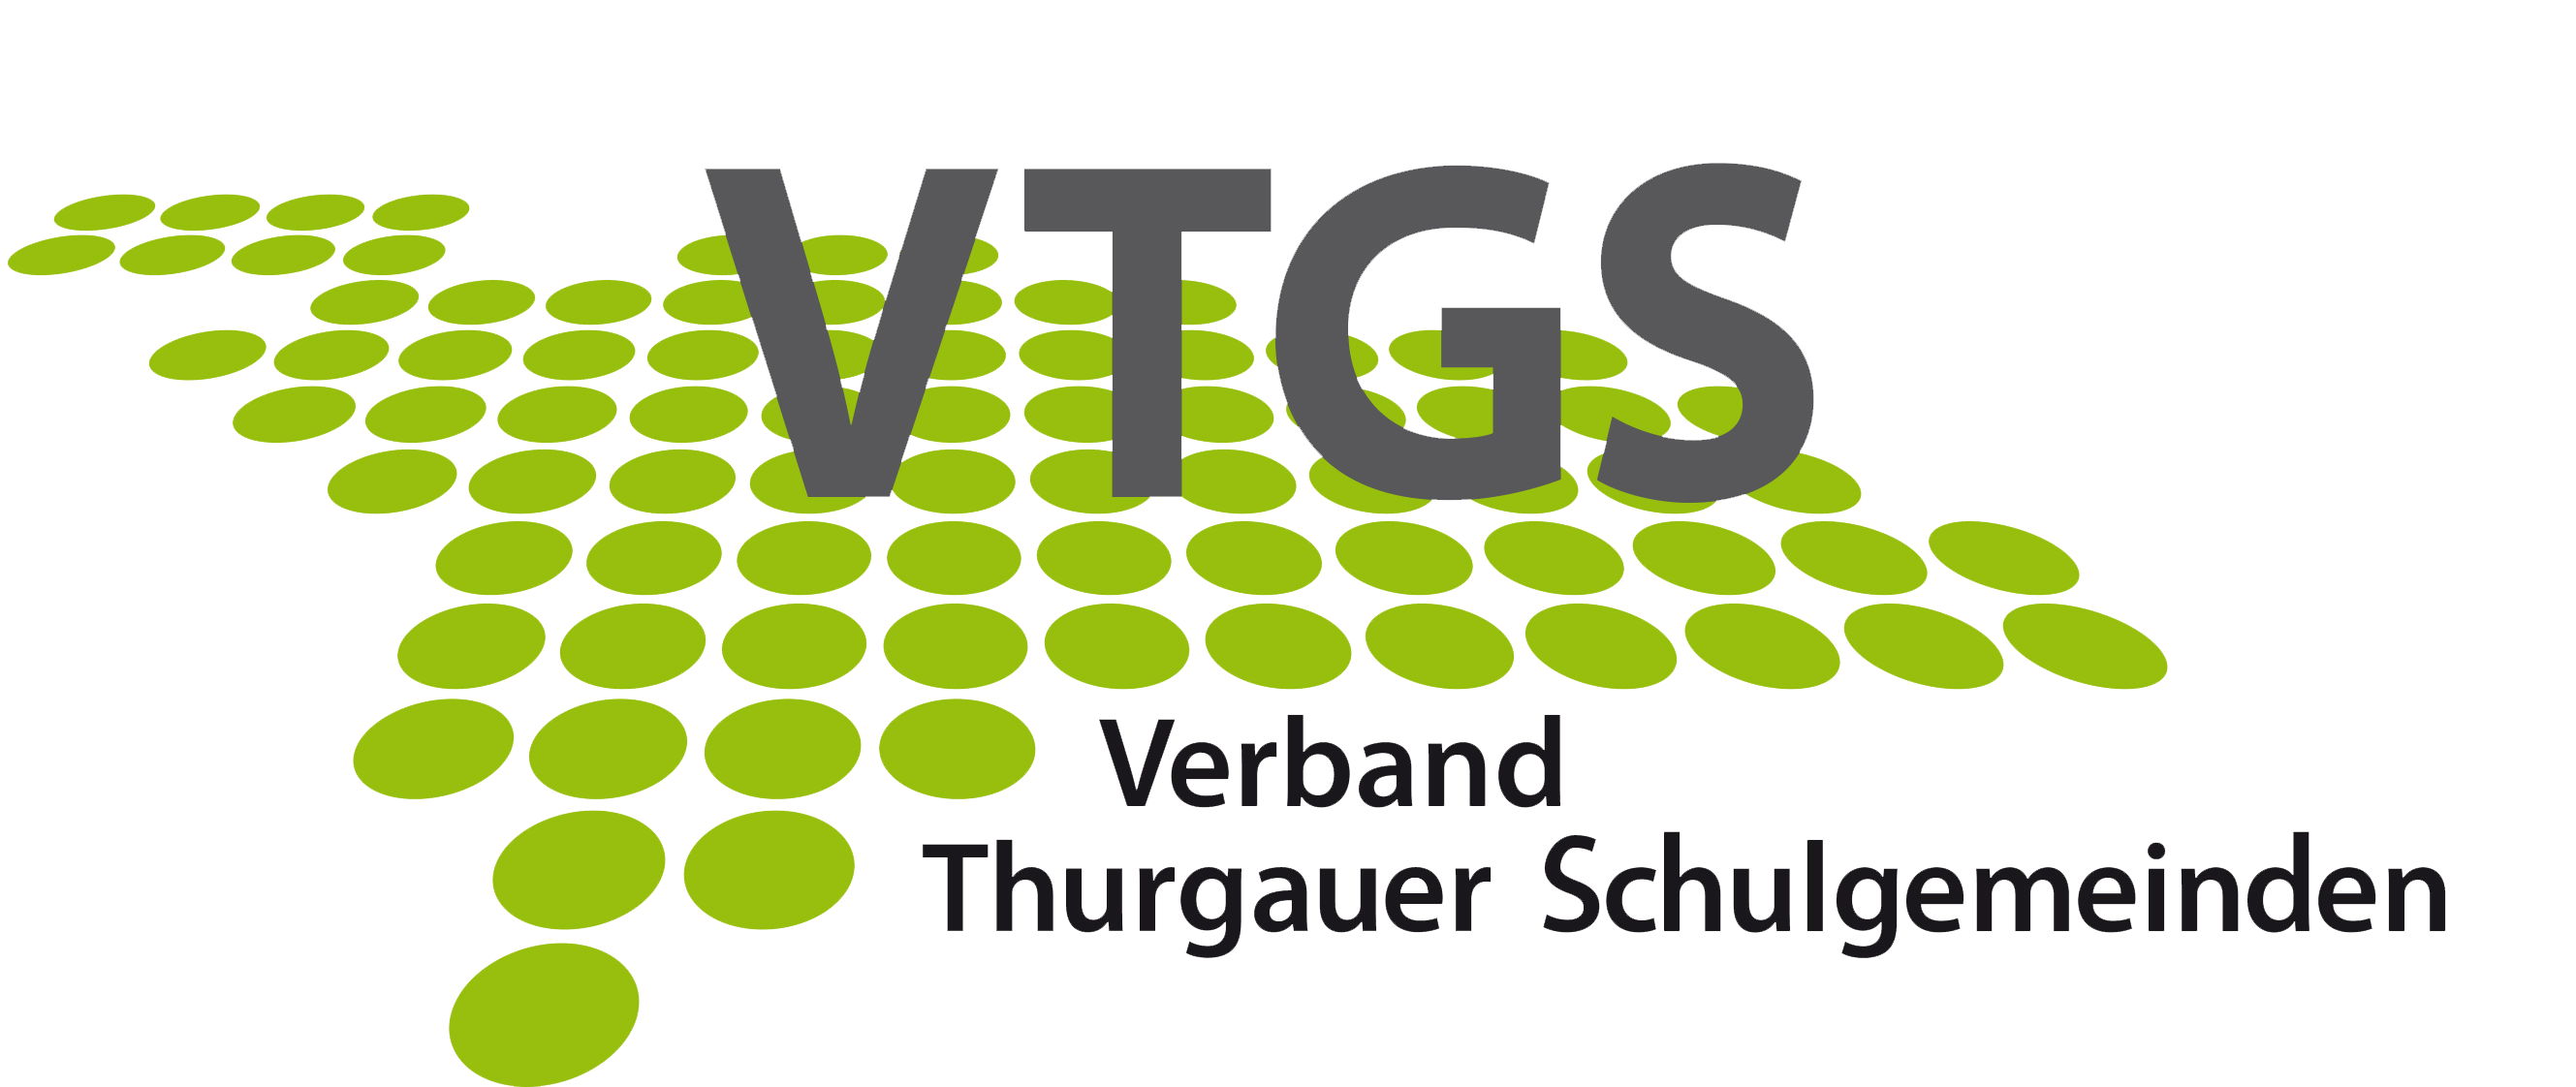 Vertrag Thurgauer Schulgemeinden